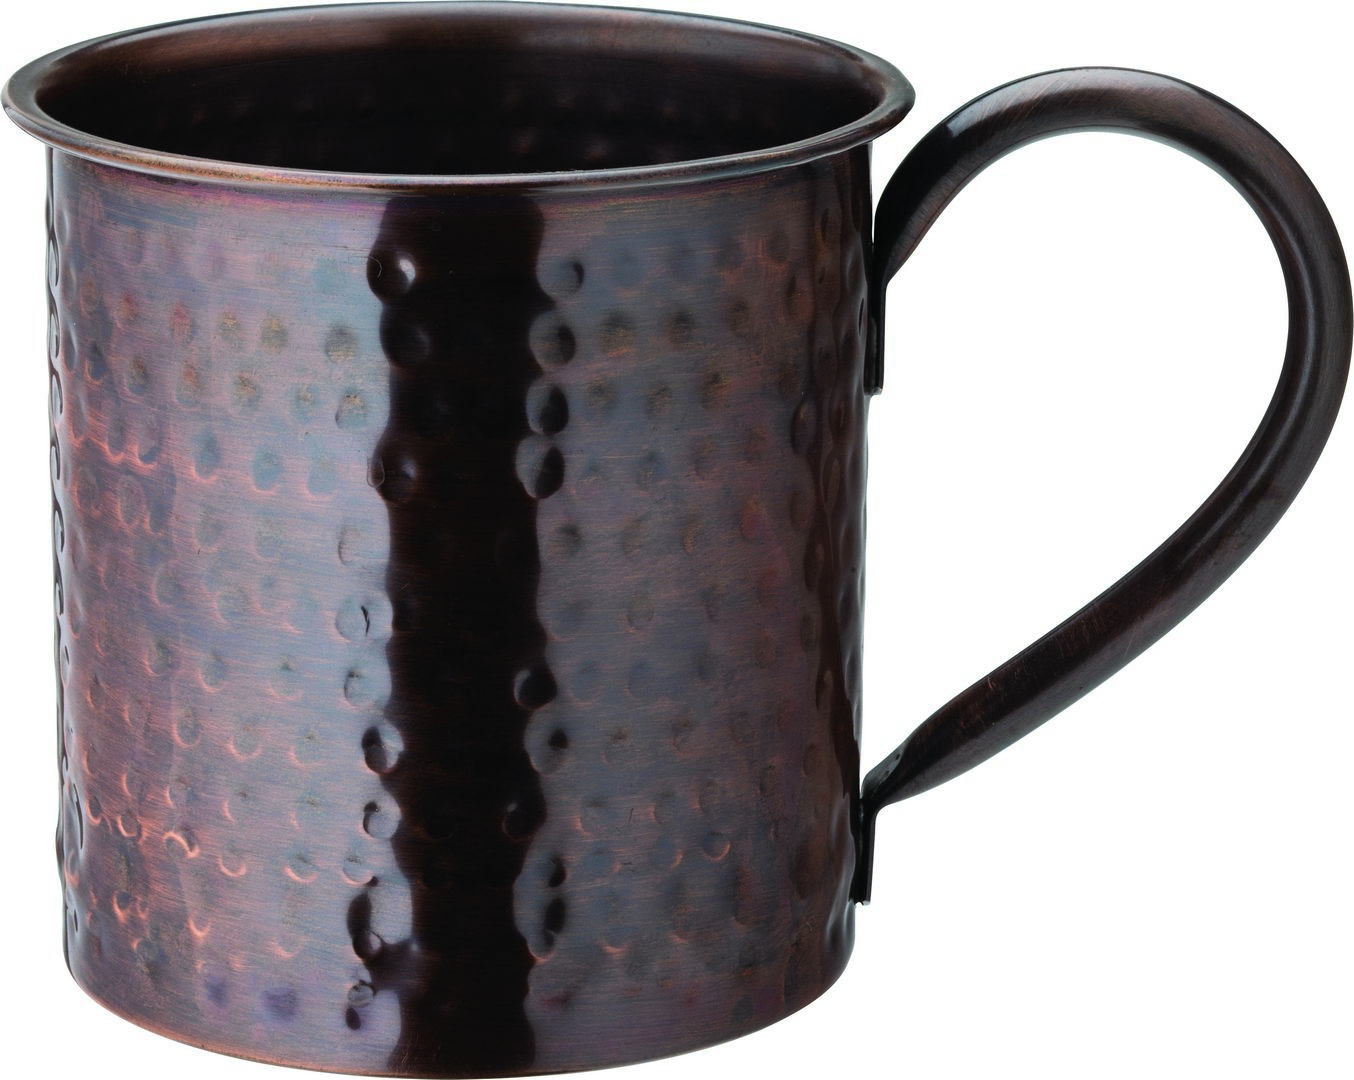 Aged Copper Hammered Mug 19oz (54cl) - F93032-000000-B01006 (Pack of 6)